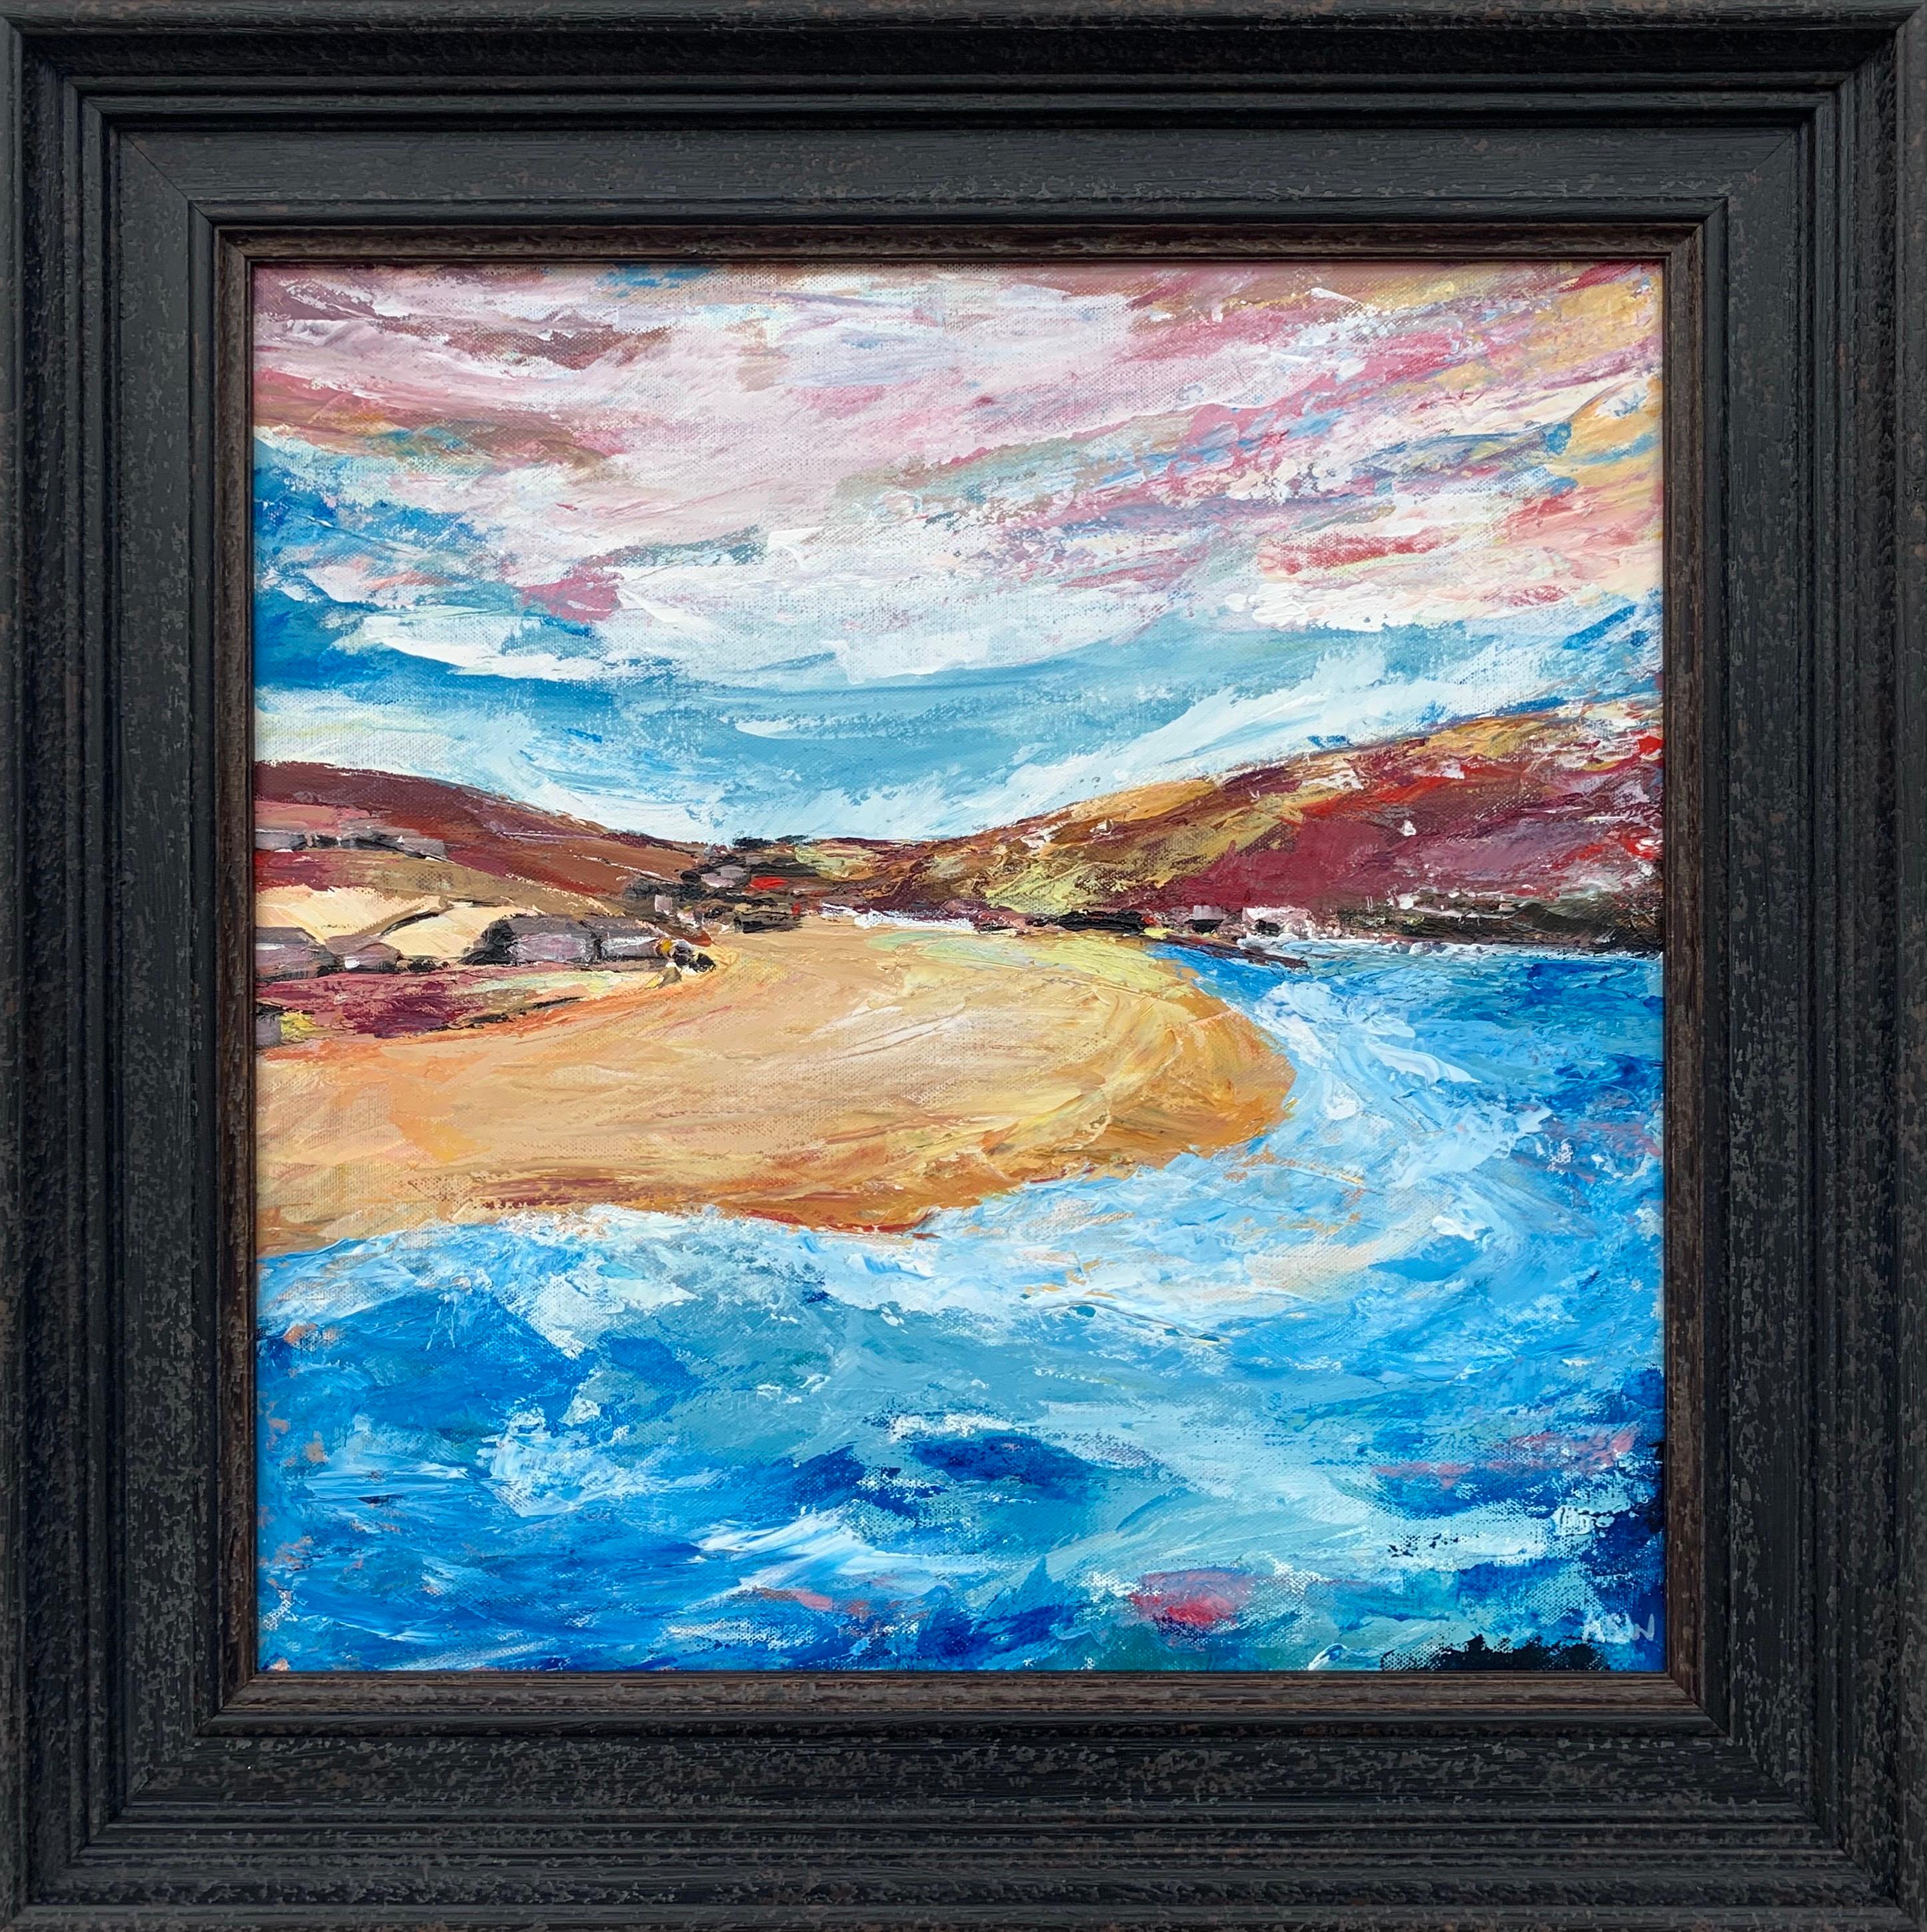 Peinture impressionniste de paysage de plage d'un artiste britannique contemporain